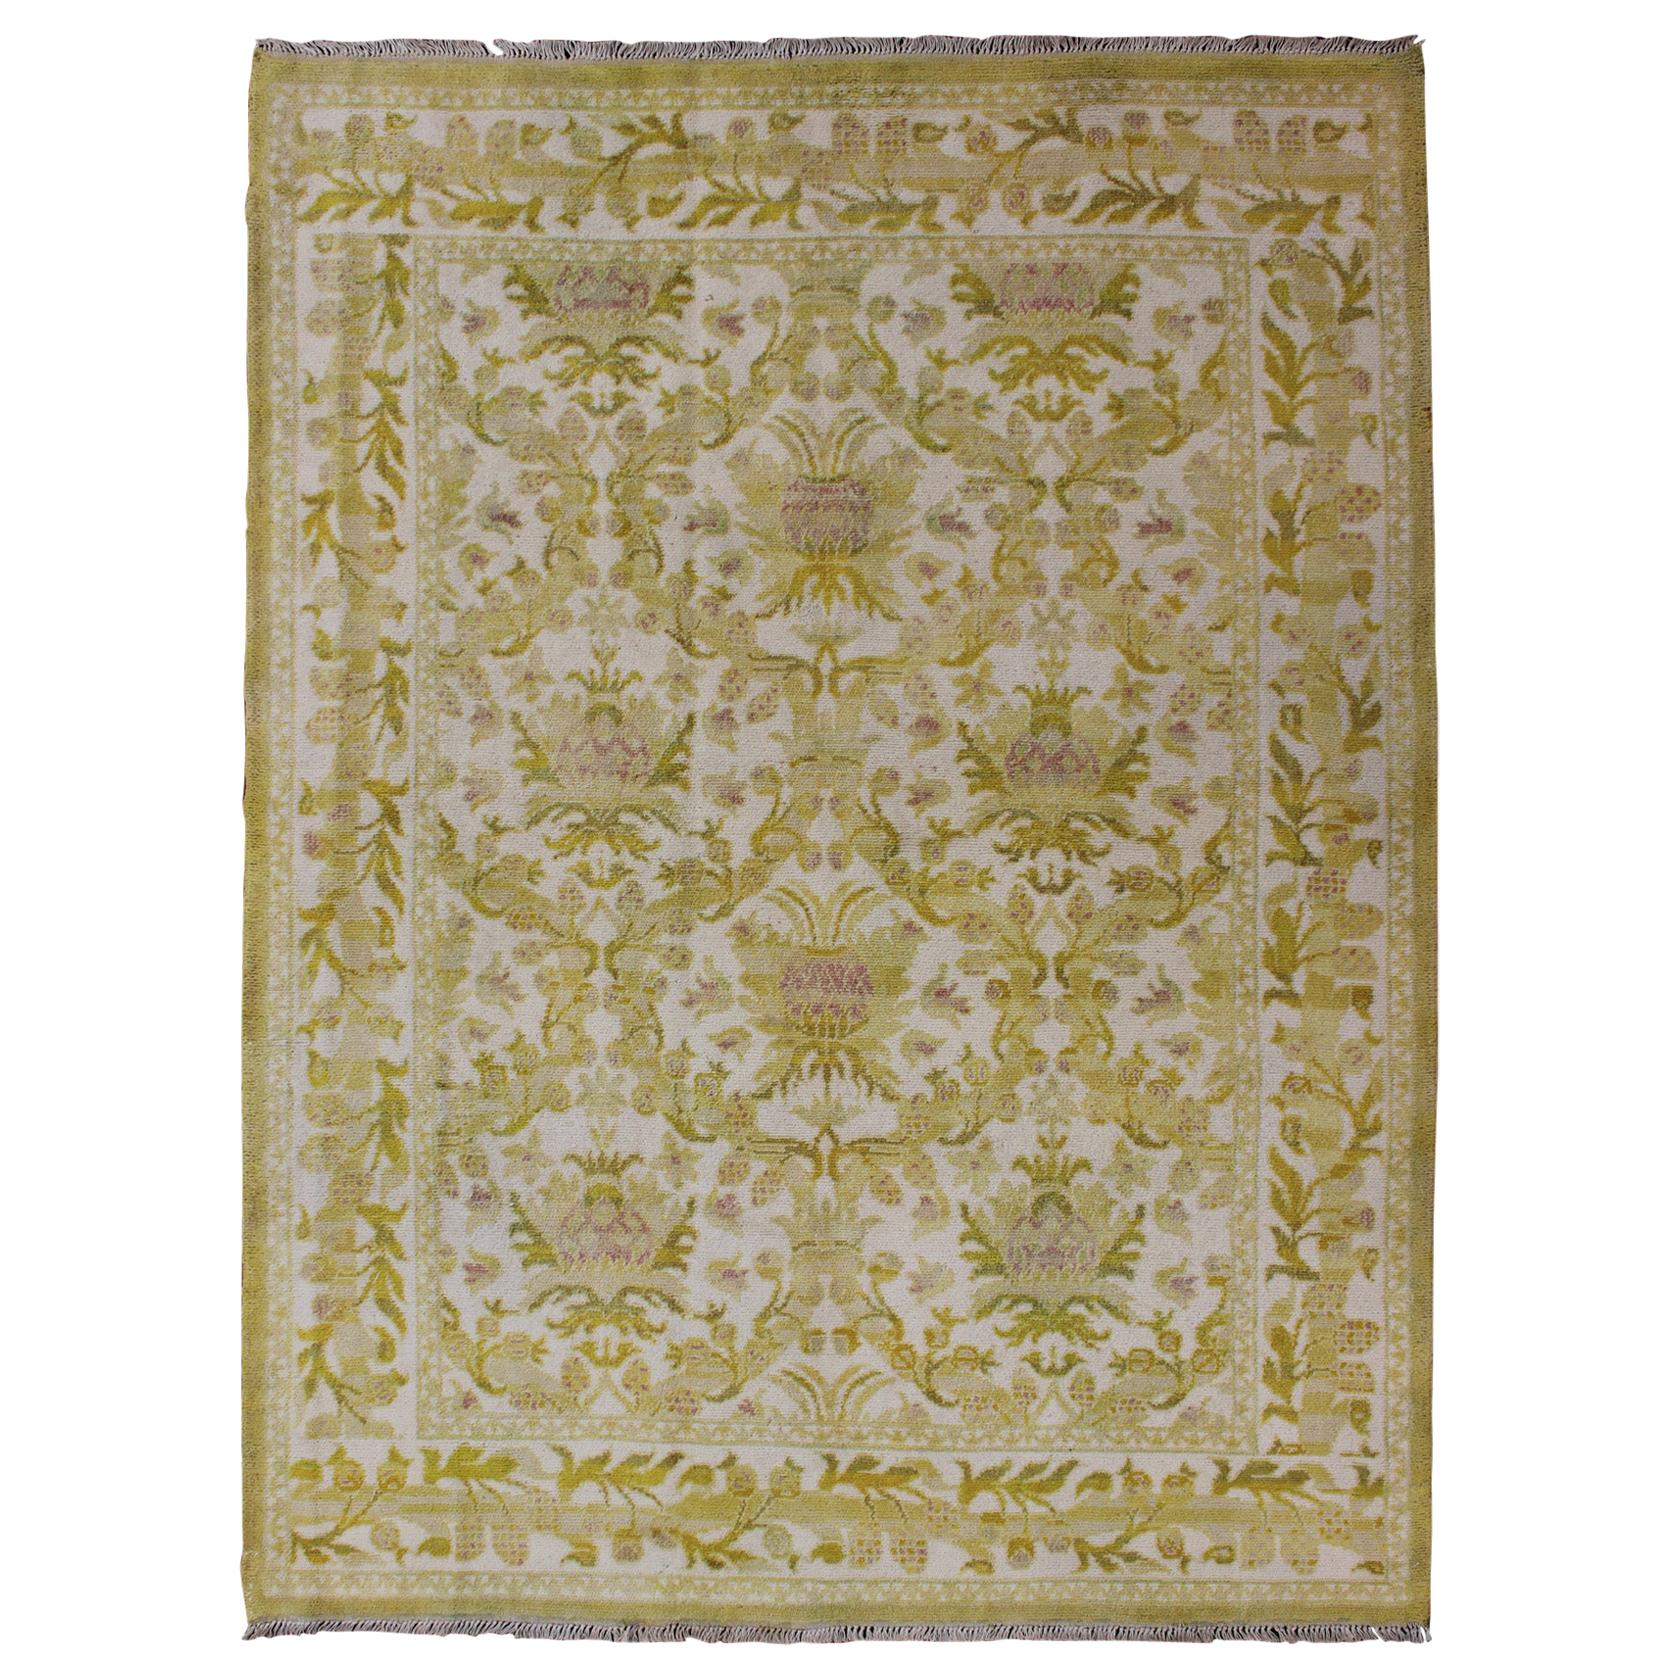 Eleganter spanischer Teppich mit floralem Muster in Goldgrün:: Säuregrün und Weiß